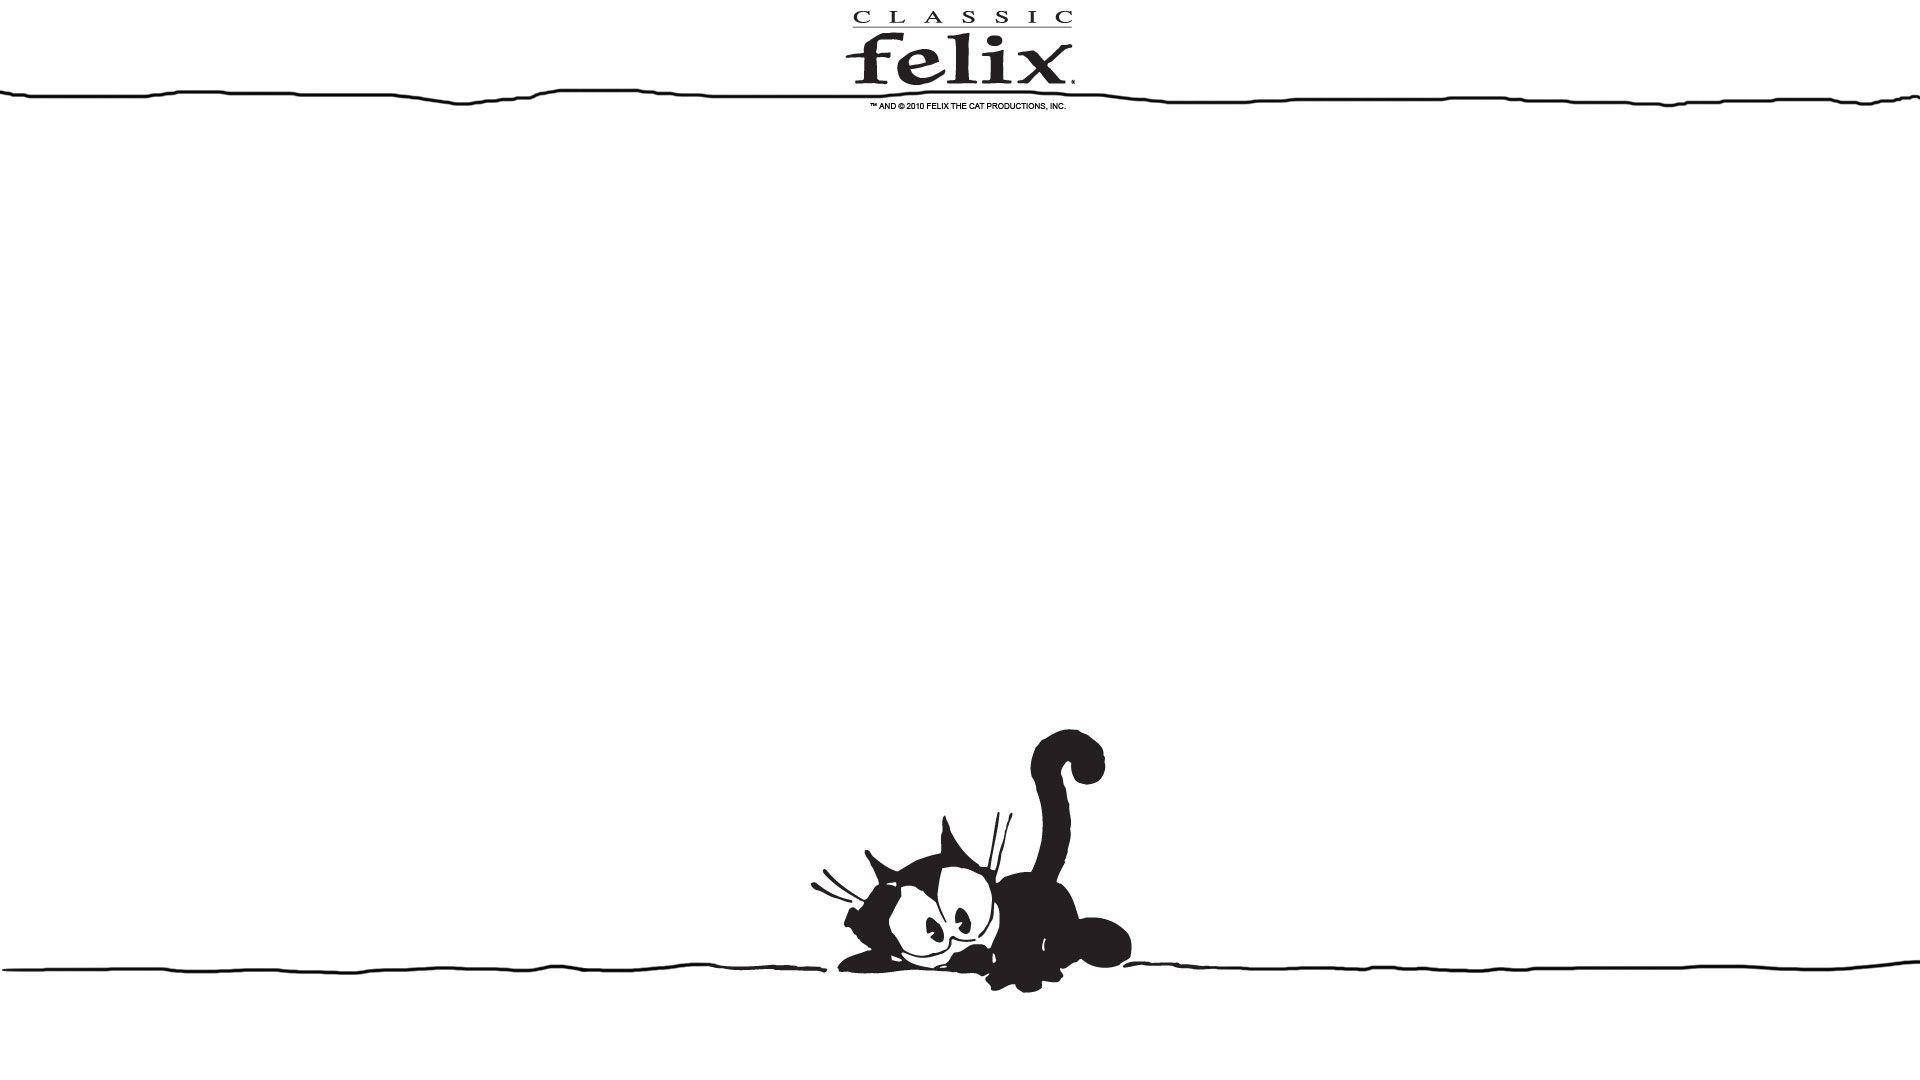 Felix The Cat Minimalist White Background